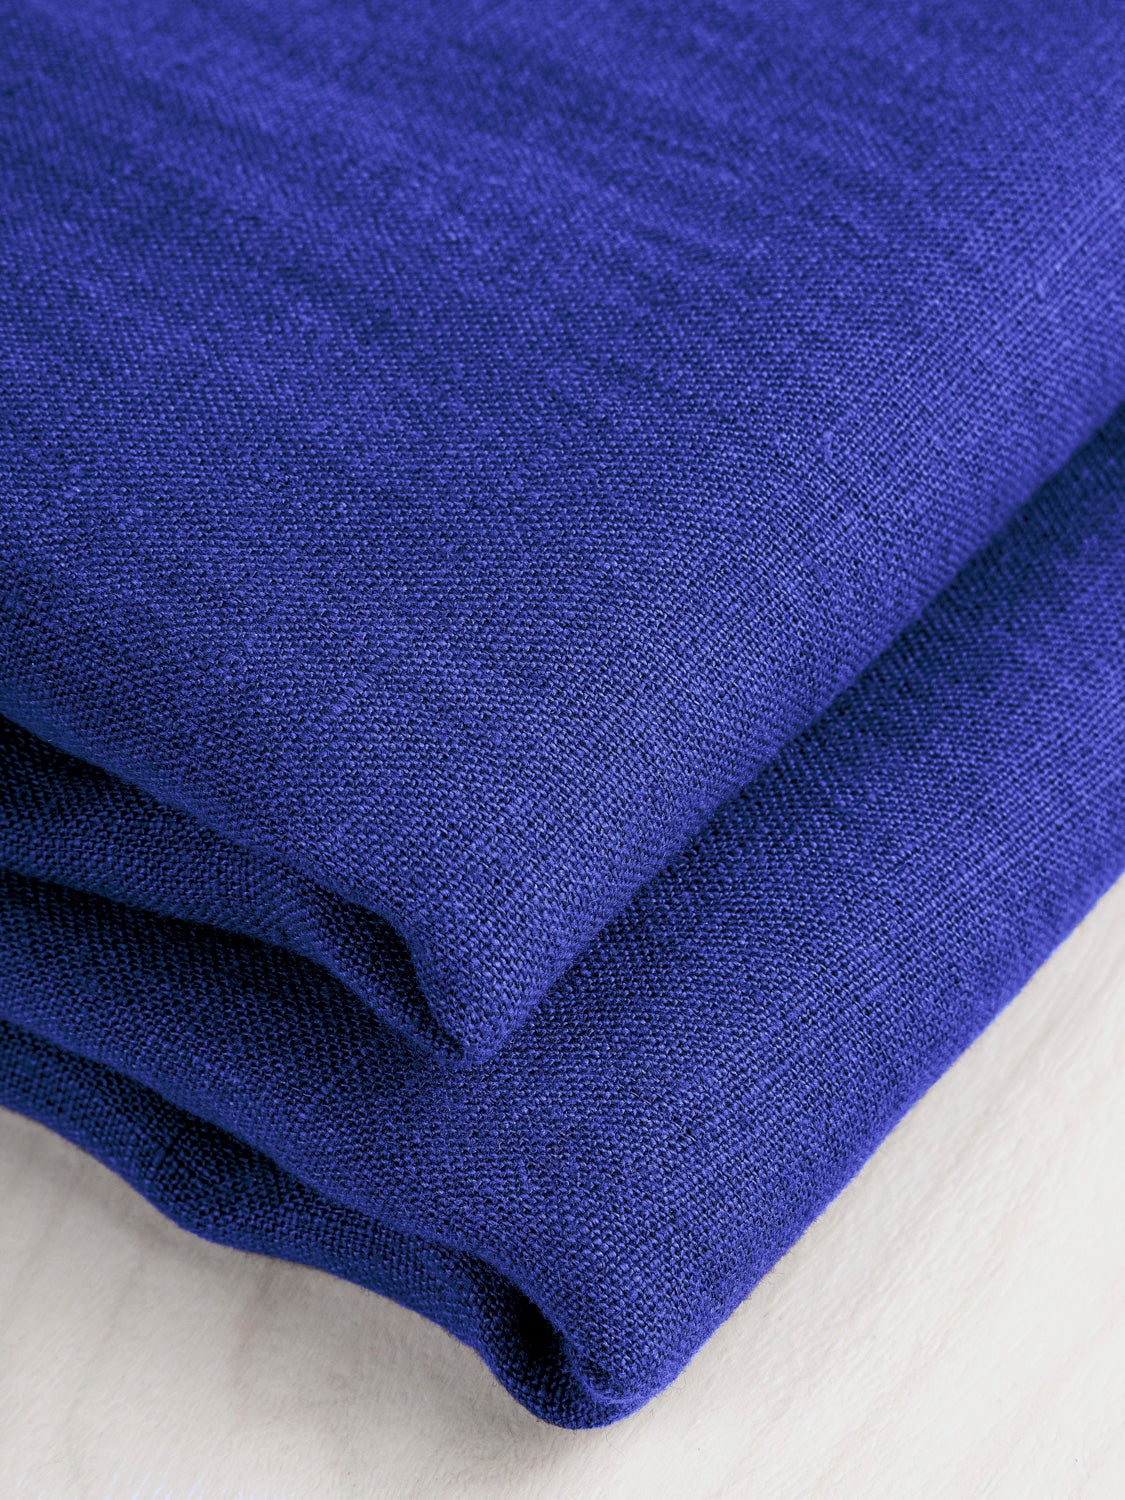 Midweight European Linen - Cobalt Blue | Core Fabrics